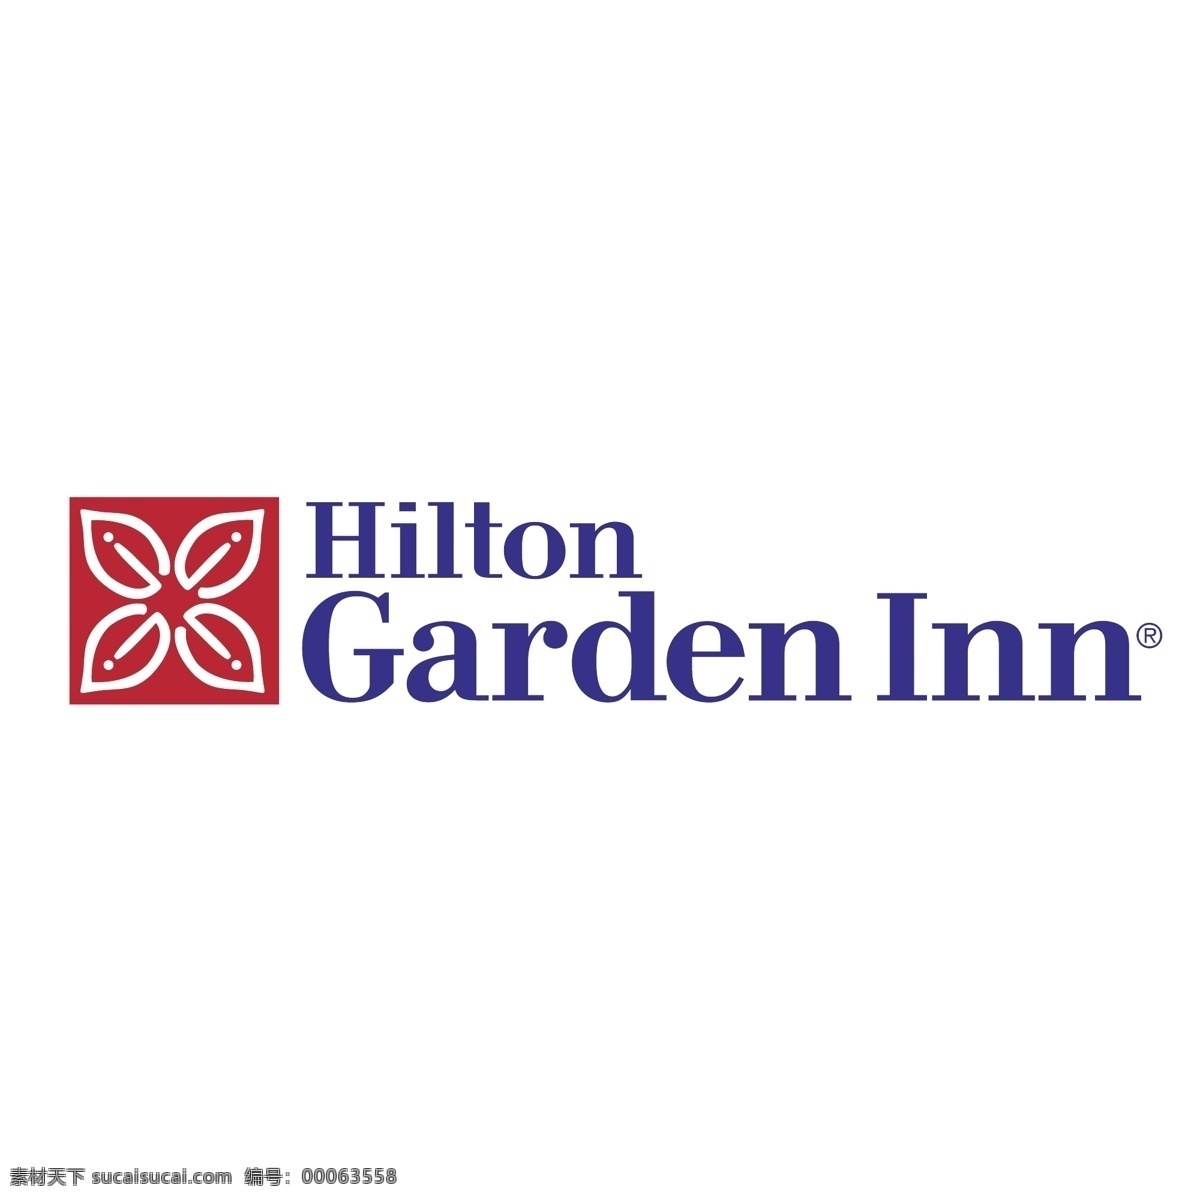 希尔顿 花园 酒店 希尔顿酒店 矢量图 其他矢量图